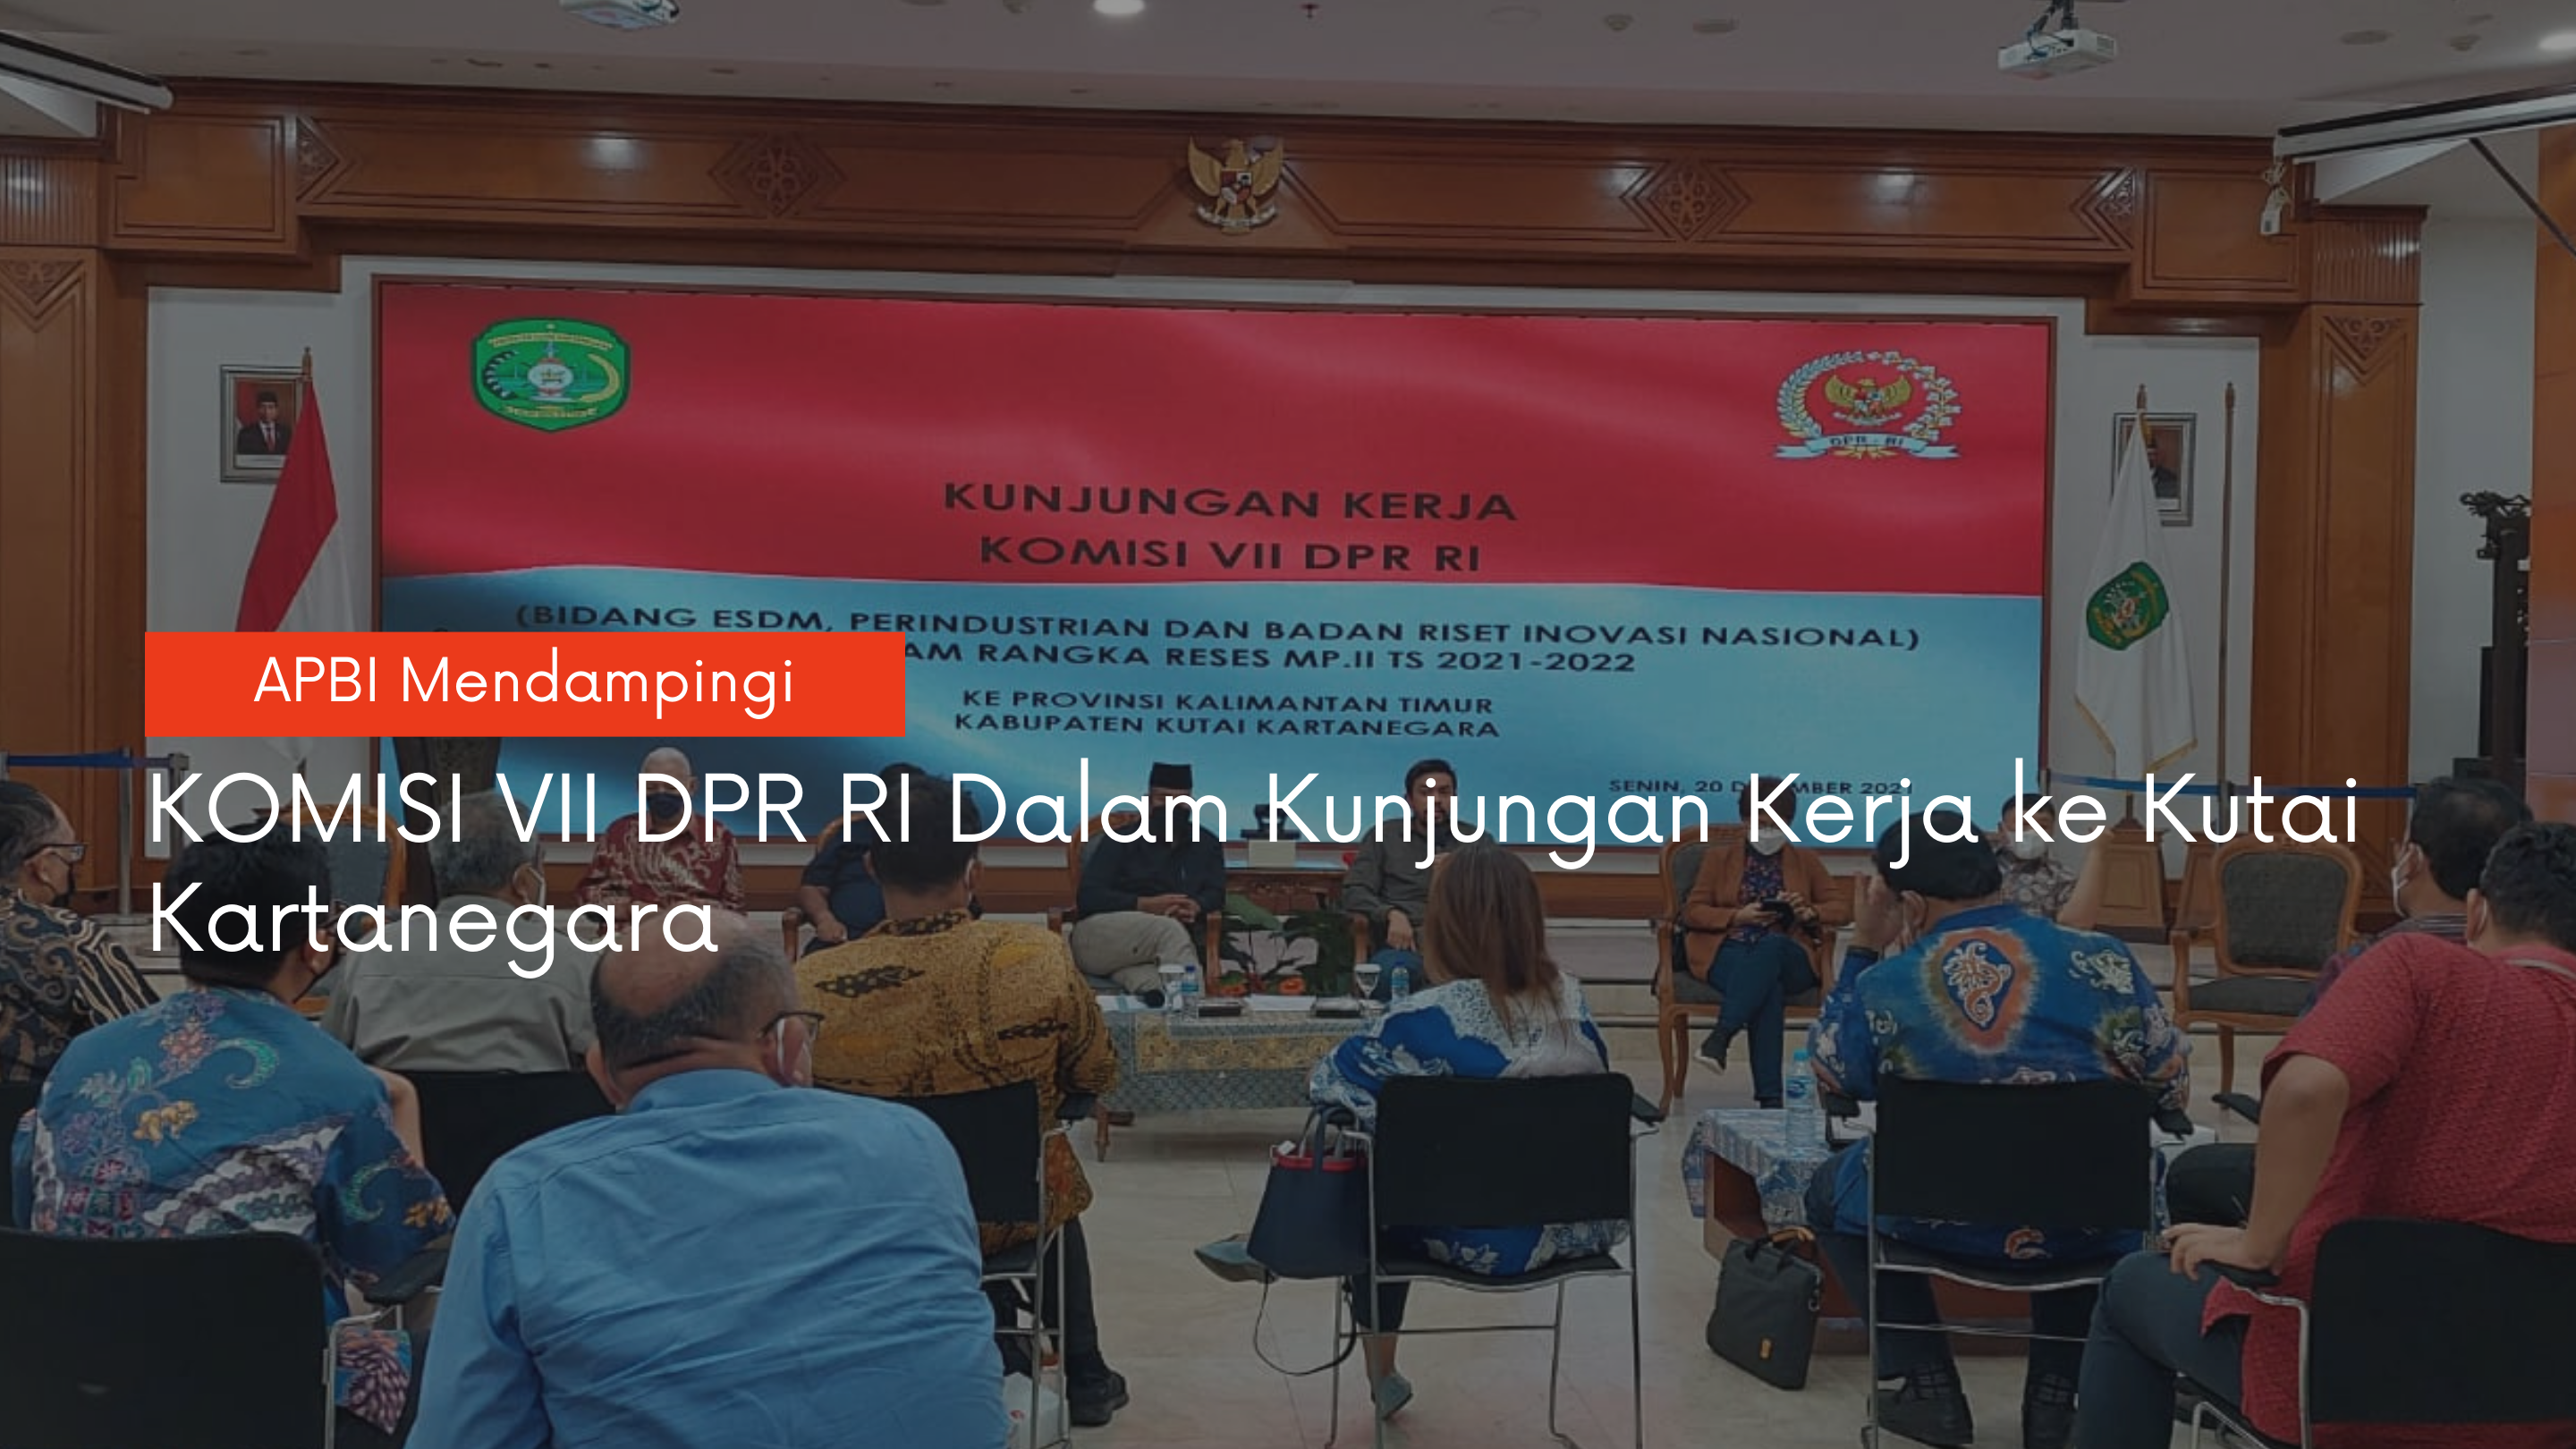 APBI Mendampingi Komisi VII DPR RI dalam Kunjungan Kerja ke Kutai Kartanegara 